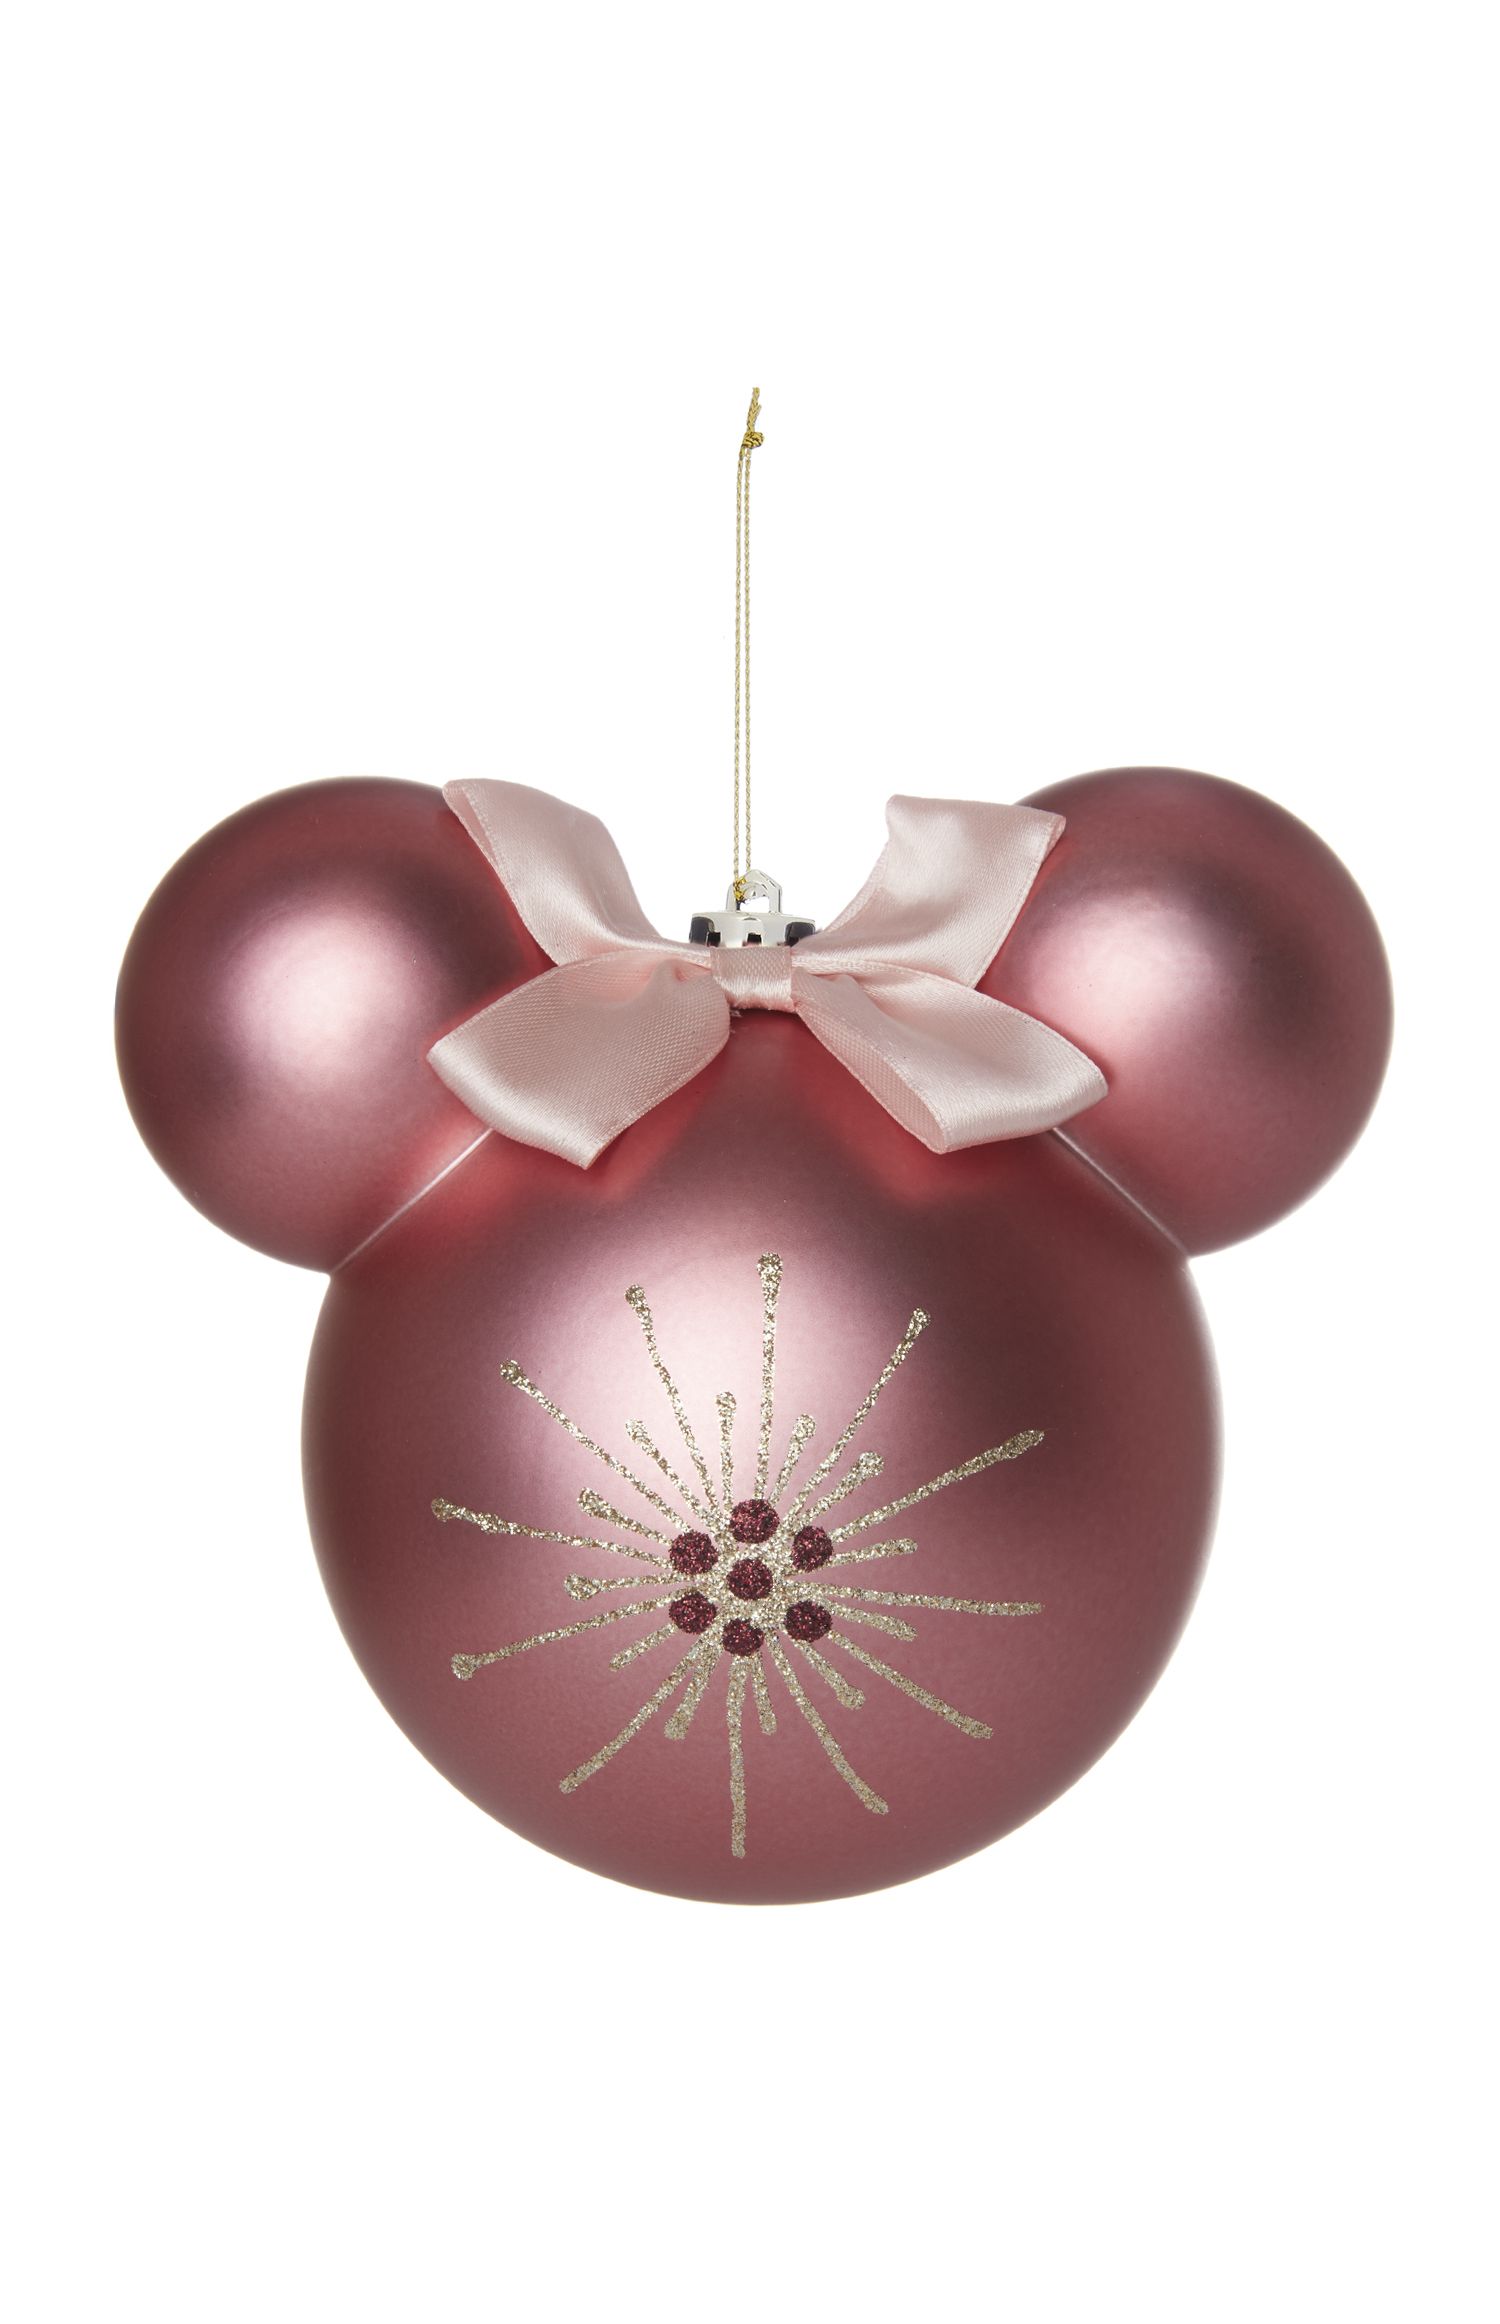 Nuevo Y En Caja Primark Disney Mickey /& Minnie Mouse 4 árbol de Navidad Decoraciones bolas.